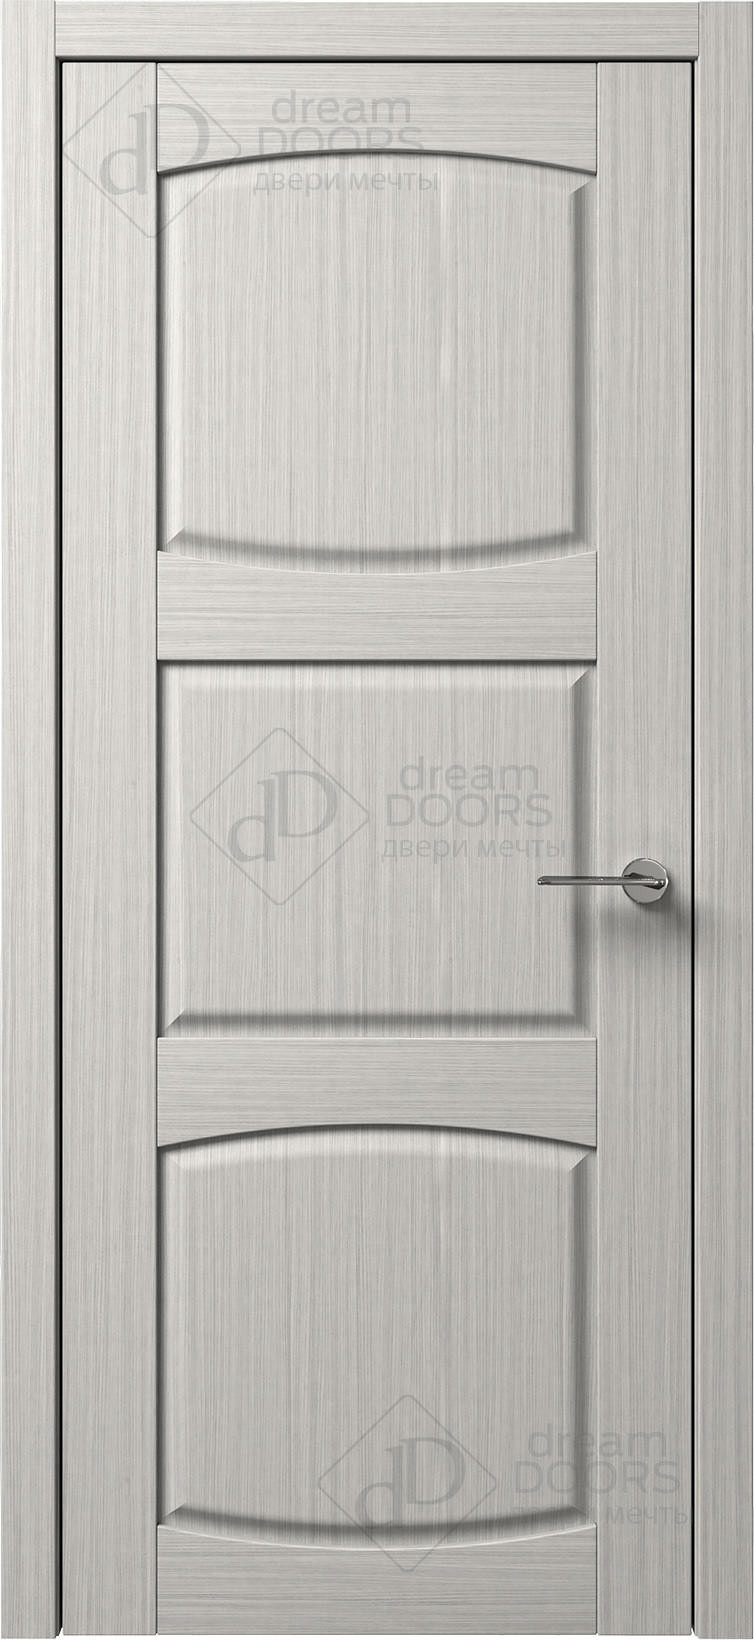 Dream Doors Межкомнатная дверь B7-3, арт. 5569 - фото №1